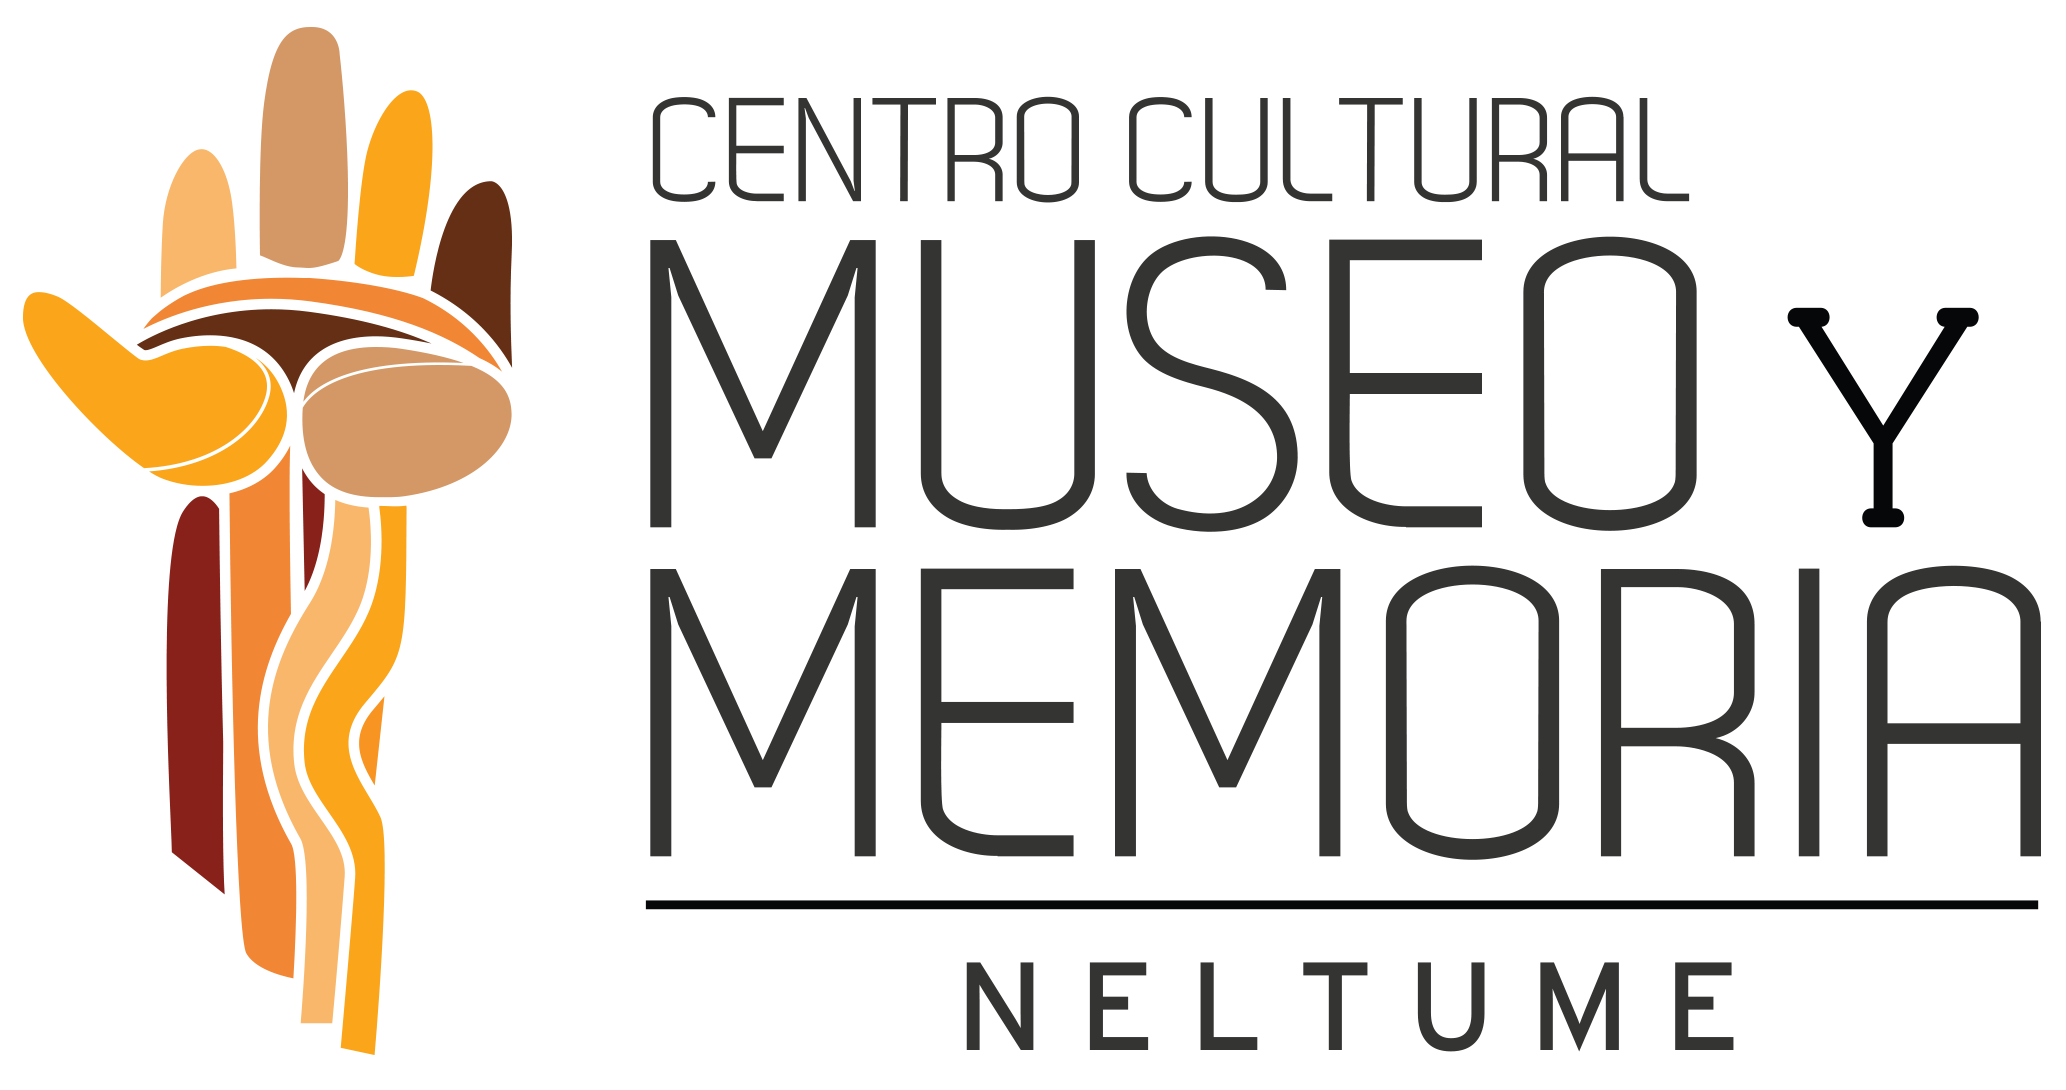 Centro Cultural Museo y Memoria Neltume